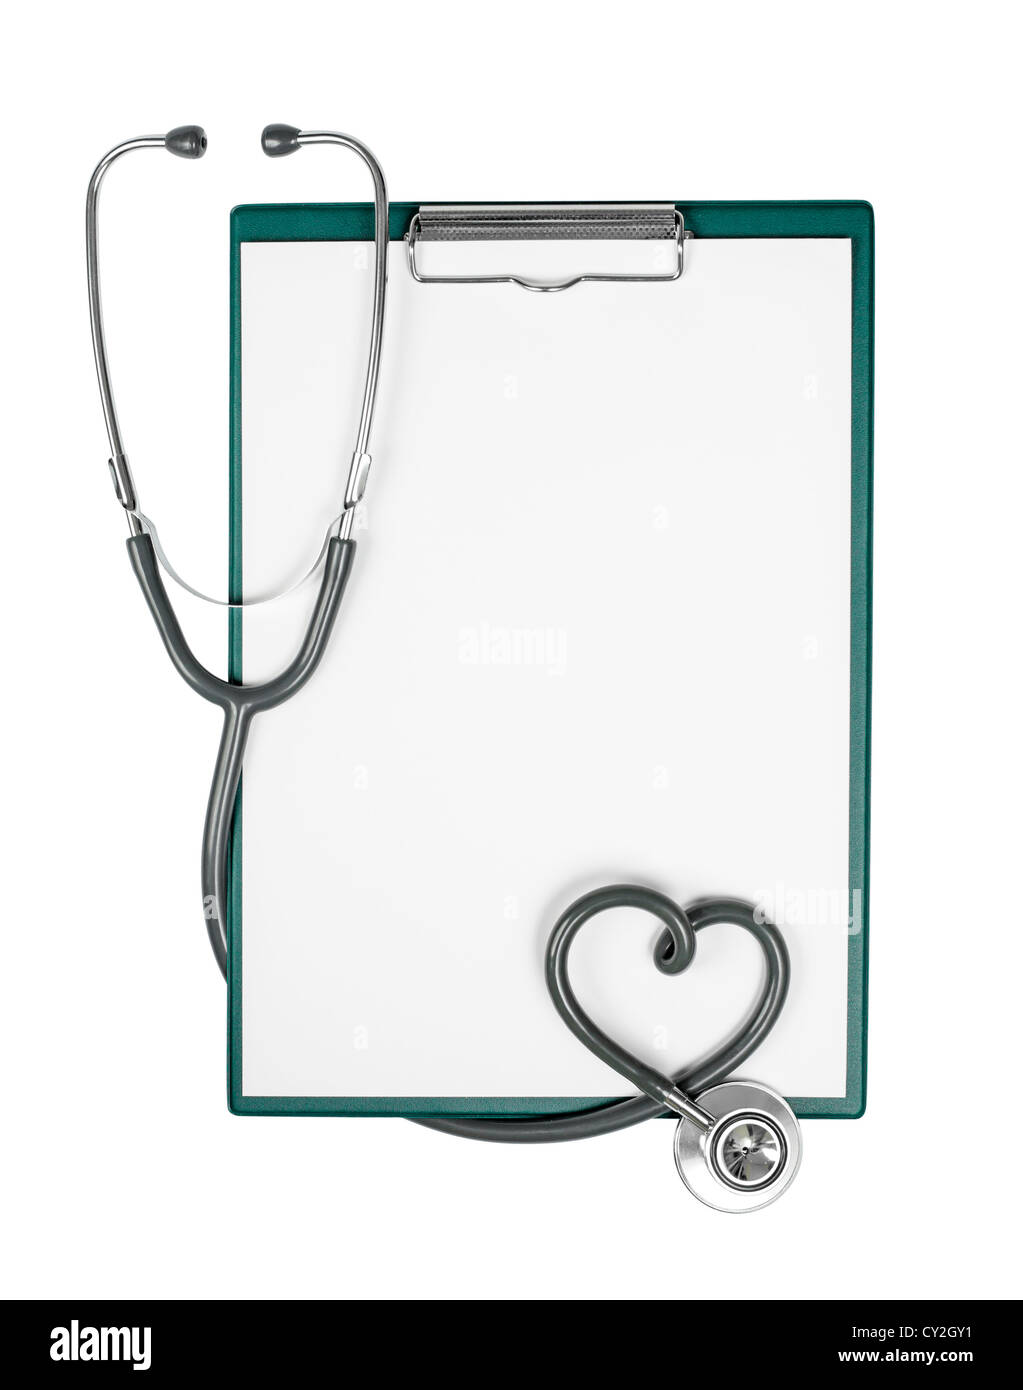 Tablilla médica con un estetoscopio en forma de corazón Foto de stock